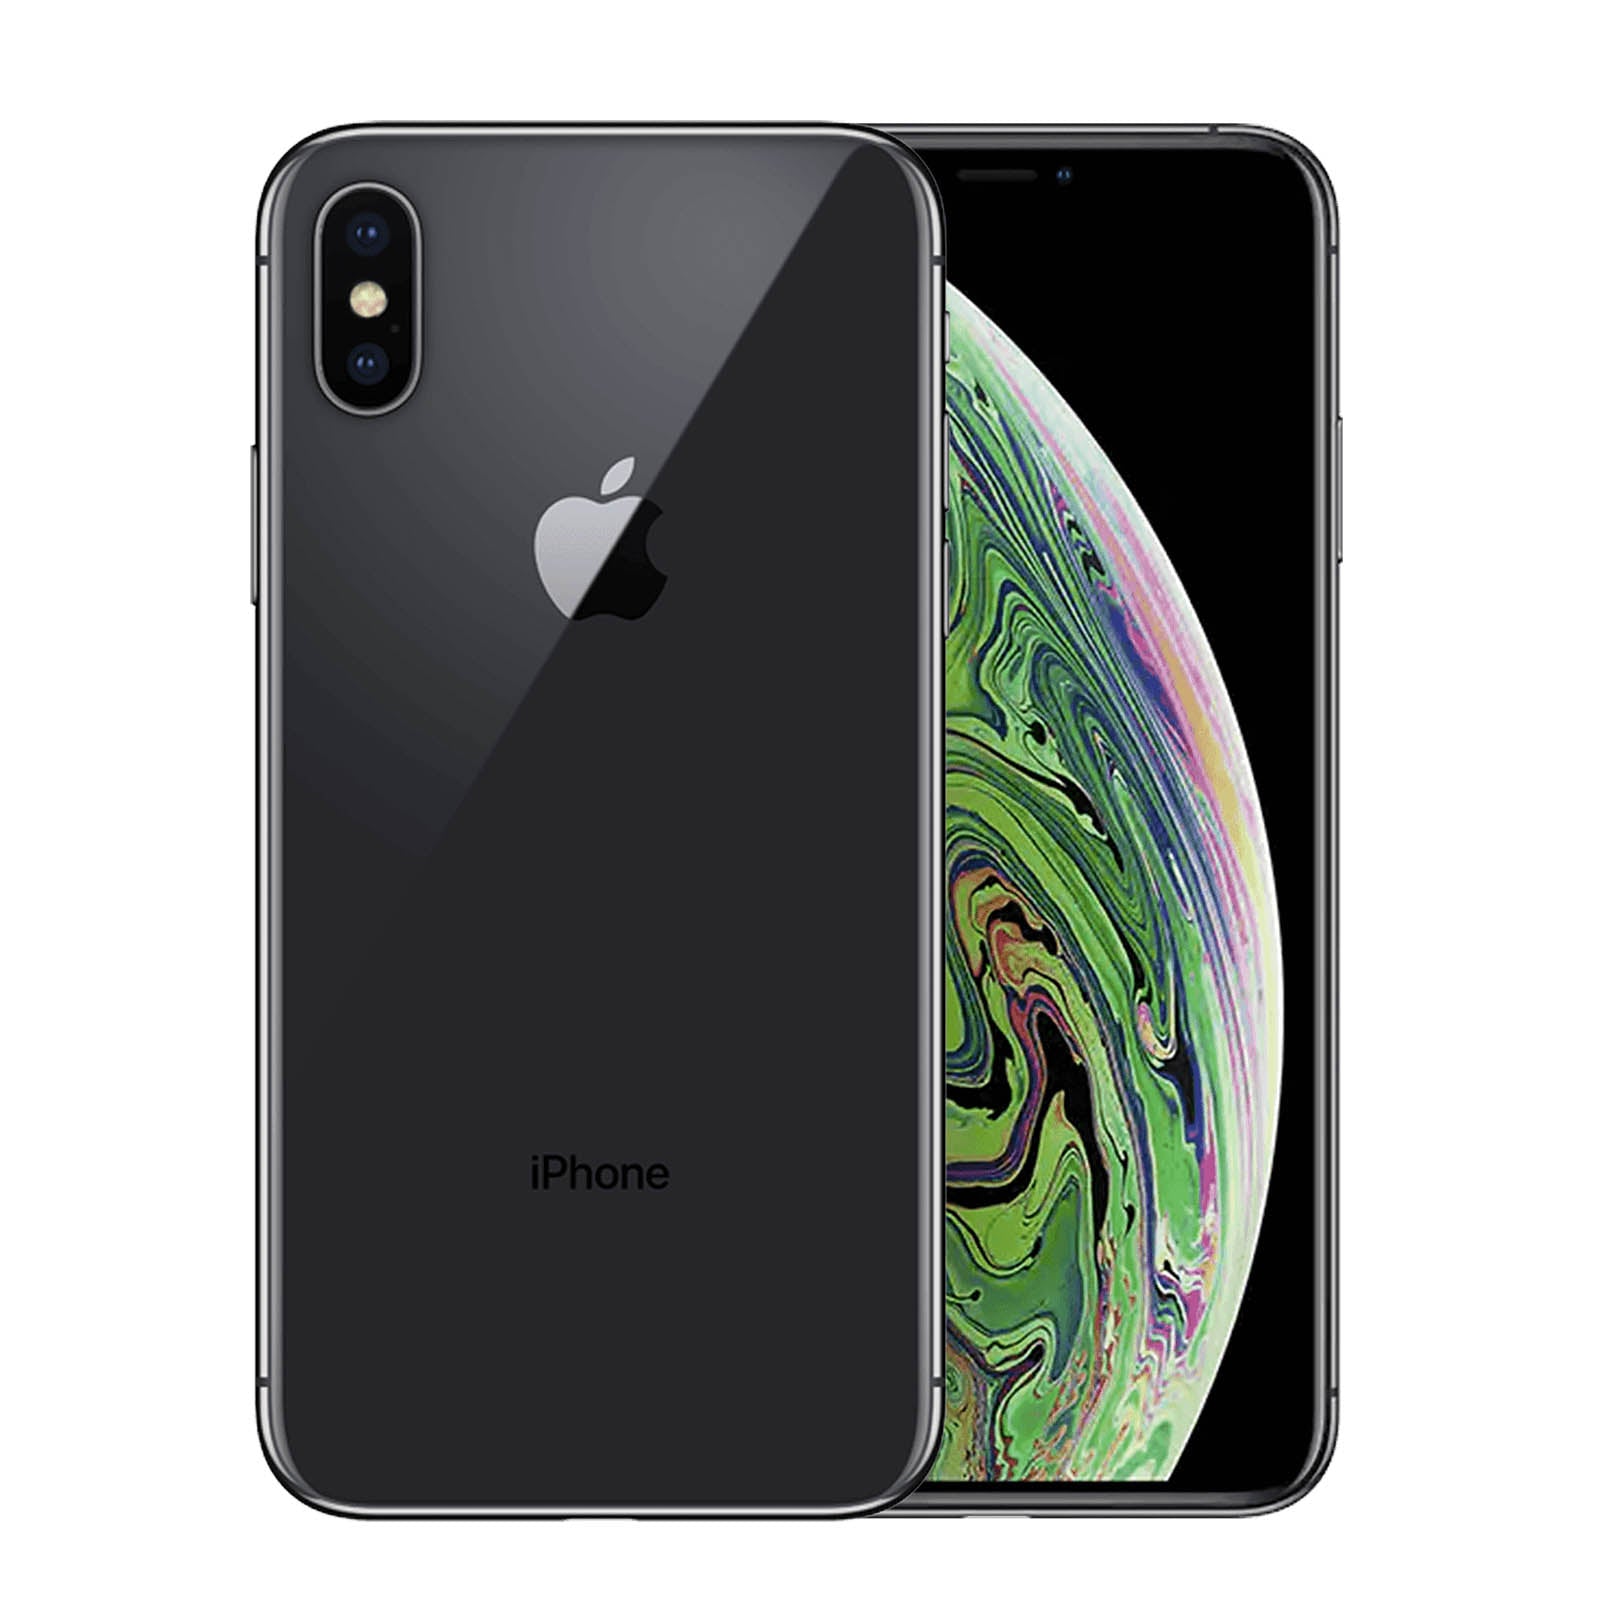 Apple iPhone XS 64GB Space Grau Fair - Ohne Vertrag